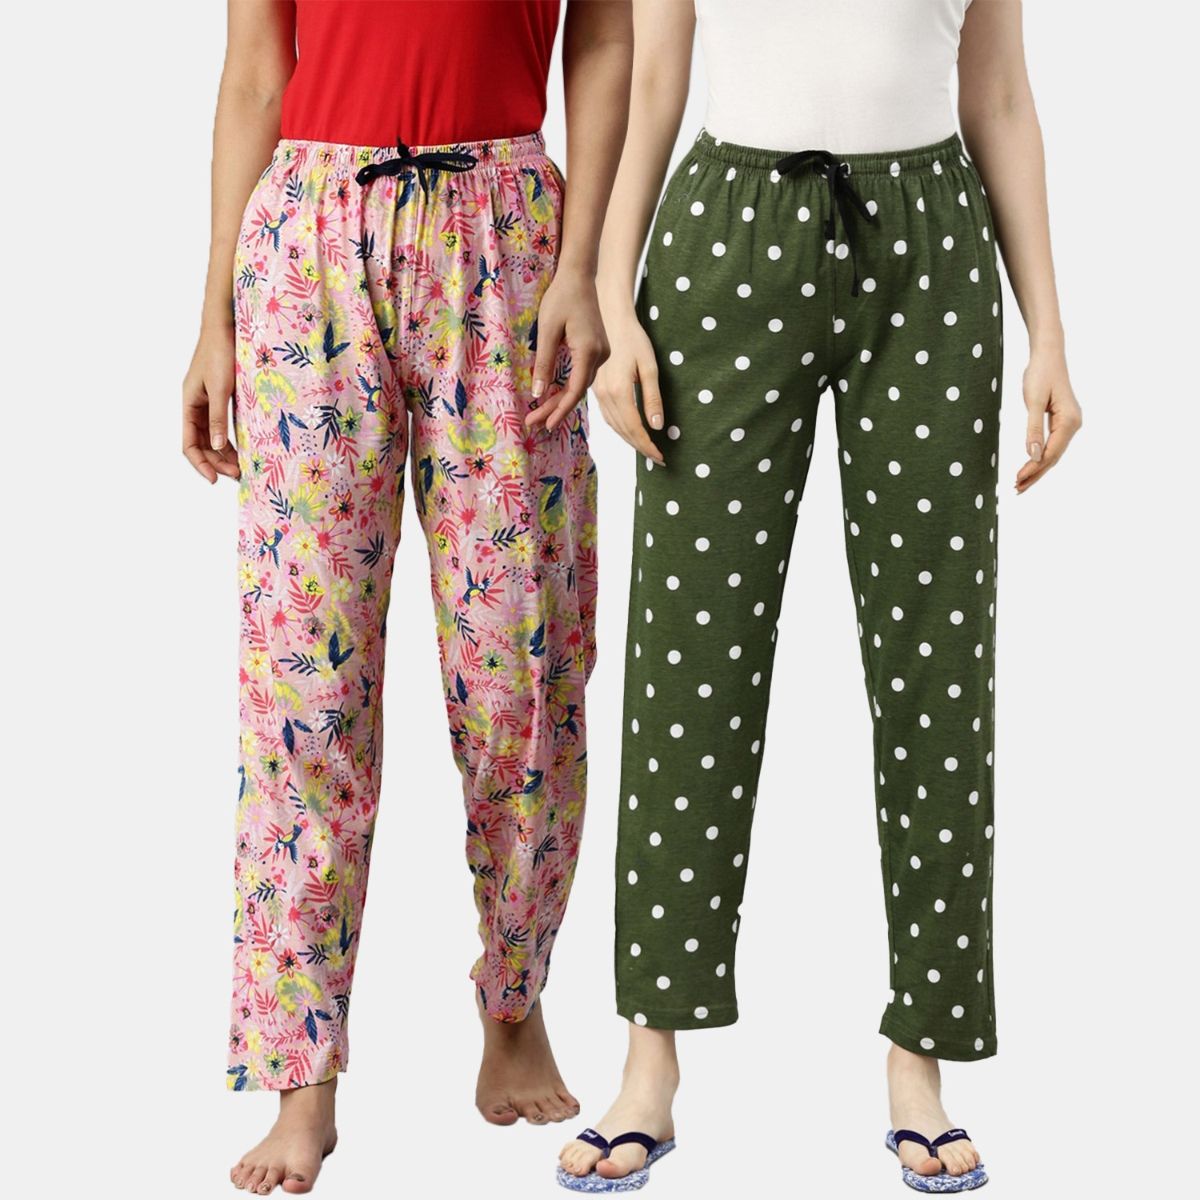 Pantalon Pour Femme New Autumn Winter Modal Women's Pajamas Pant Home Wear  Sleep Bottoms Wide Leg Trousers 13 Colors